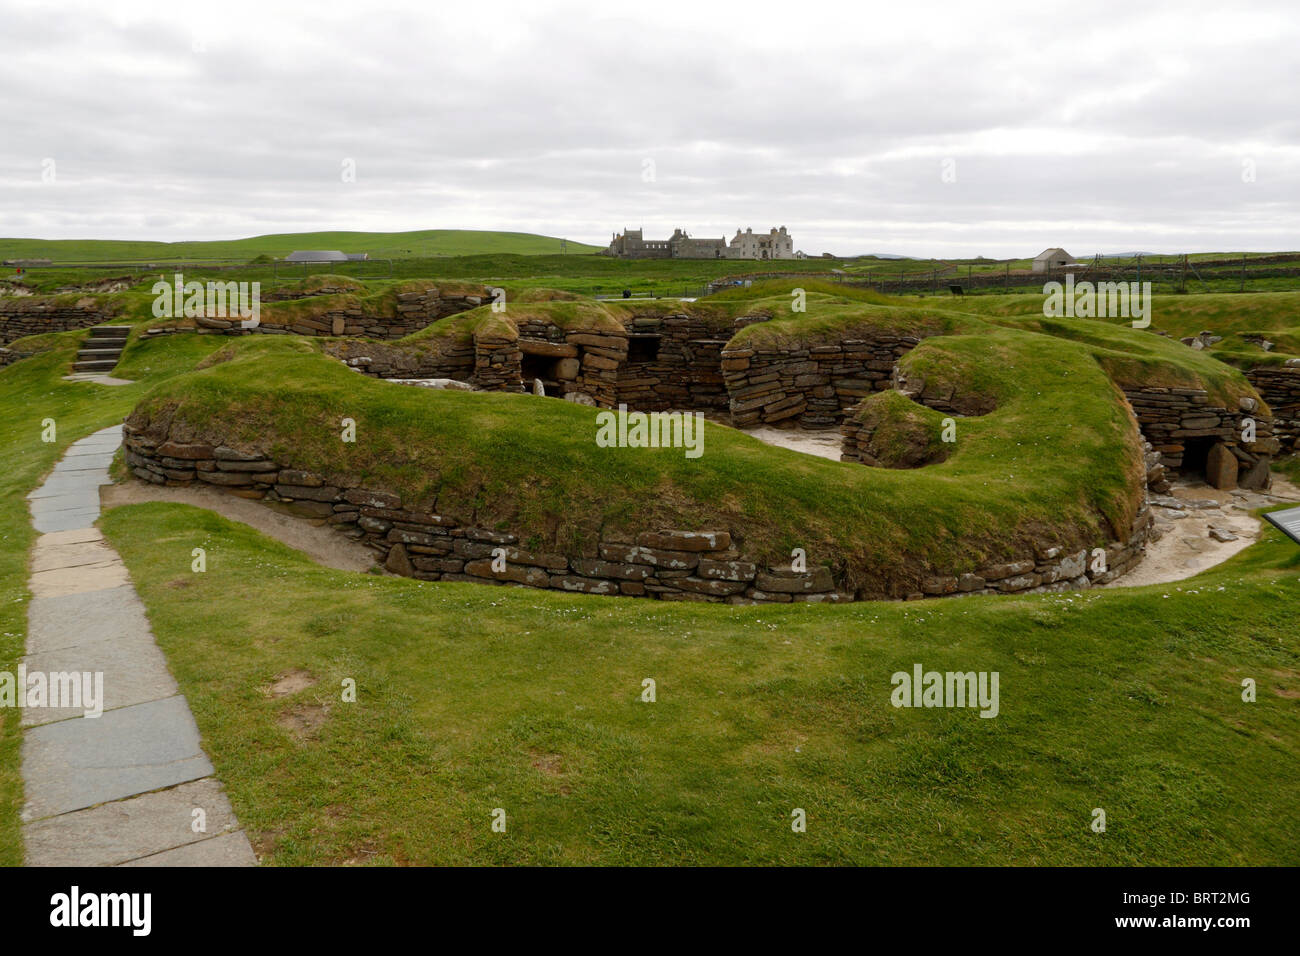 Vista del villaggio neolitico di Skara Brae con Skaill House in background Foto Stock